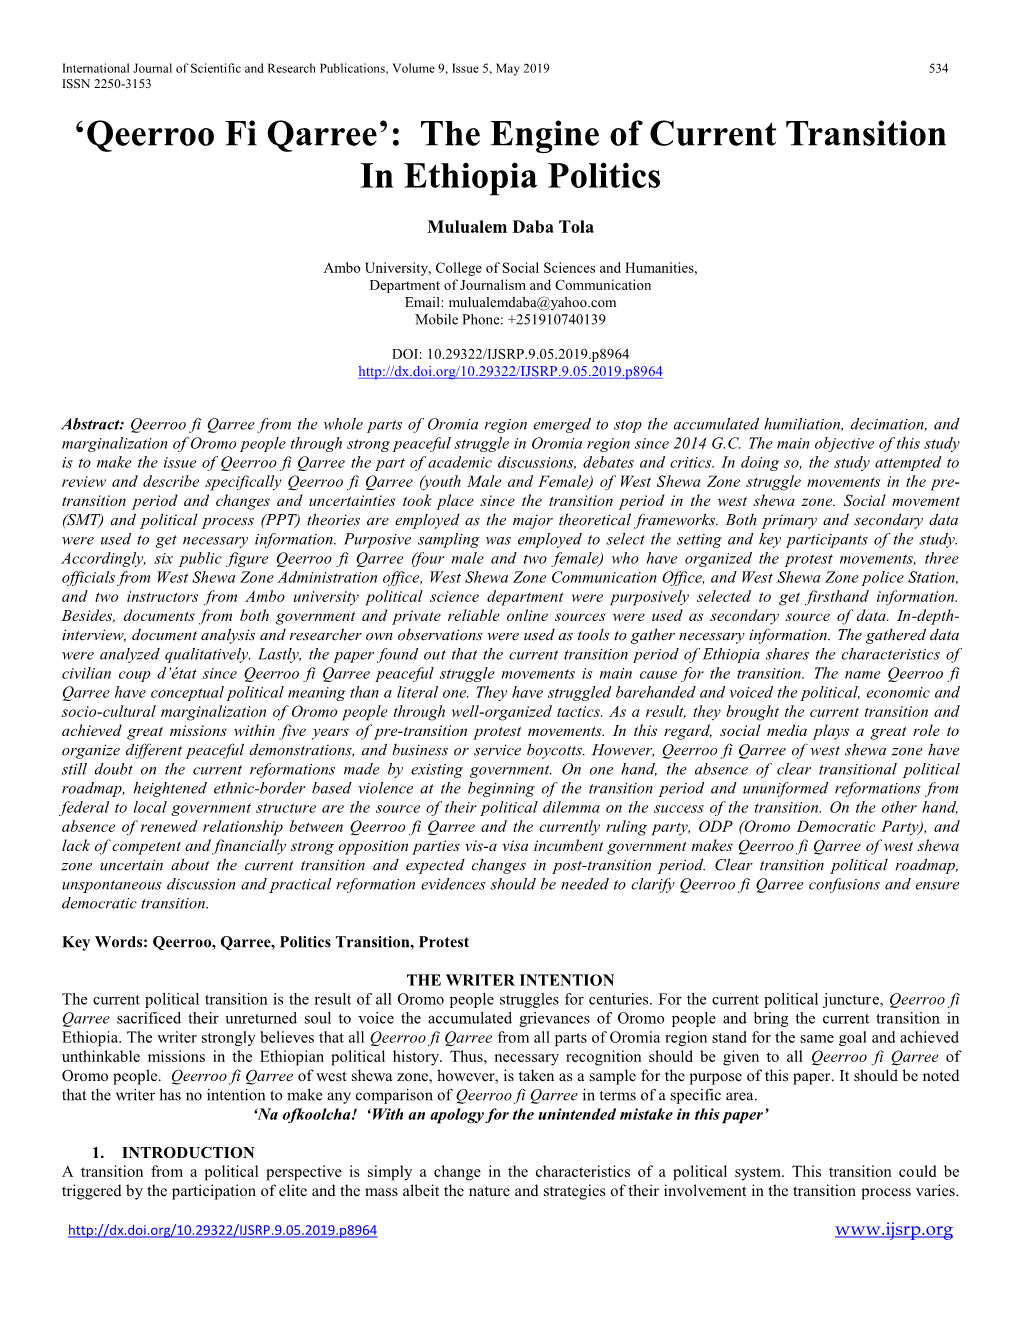 Qeerroo Fi Qarree’: the Engine of Current Transition in Ethiopia Politics